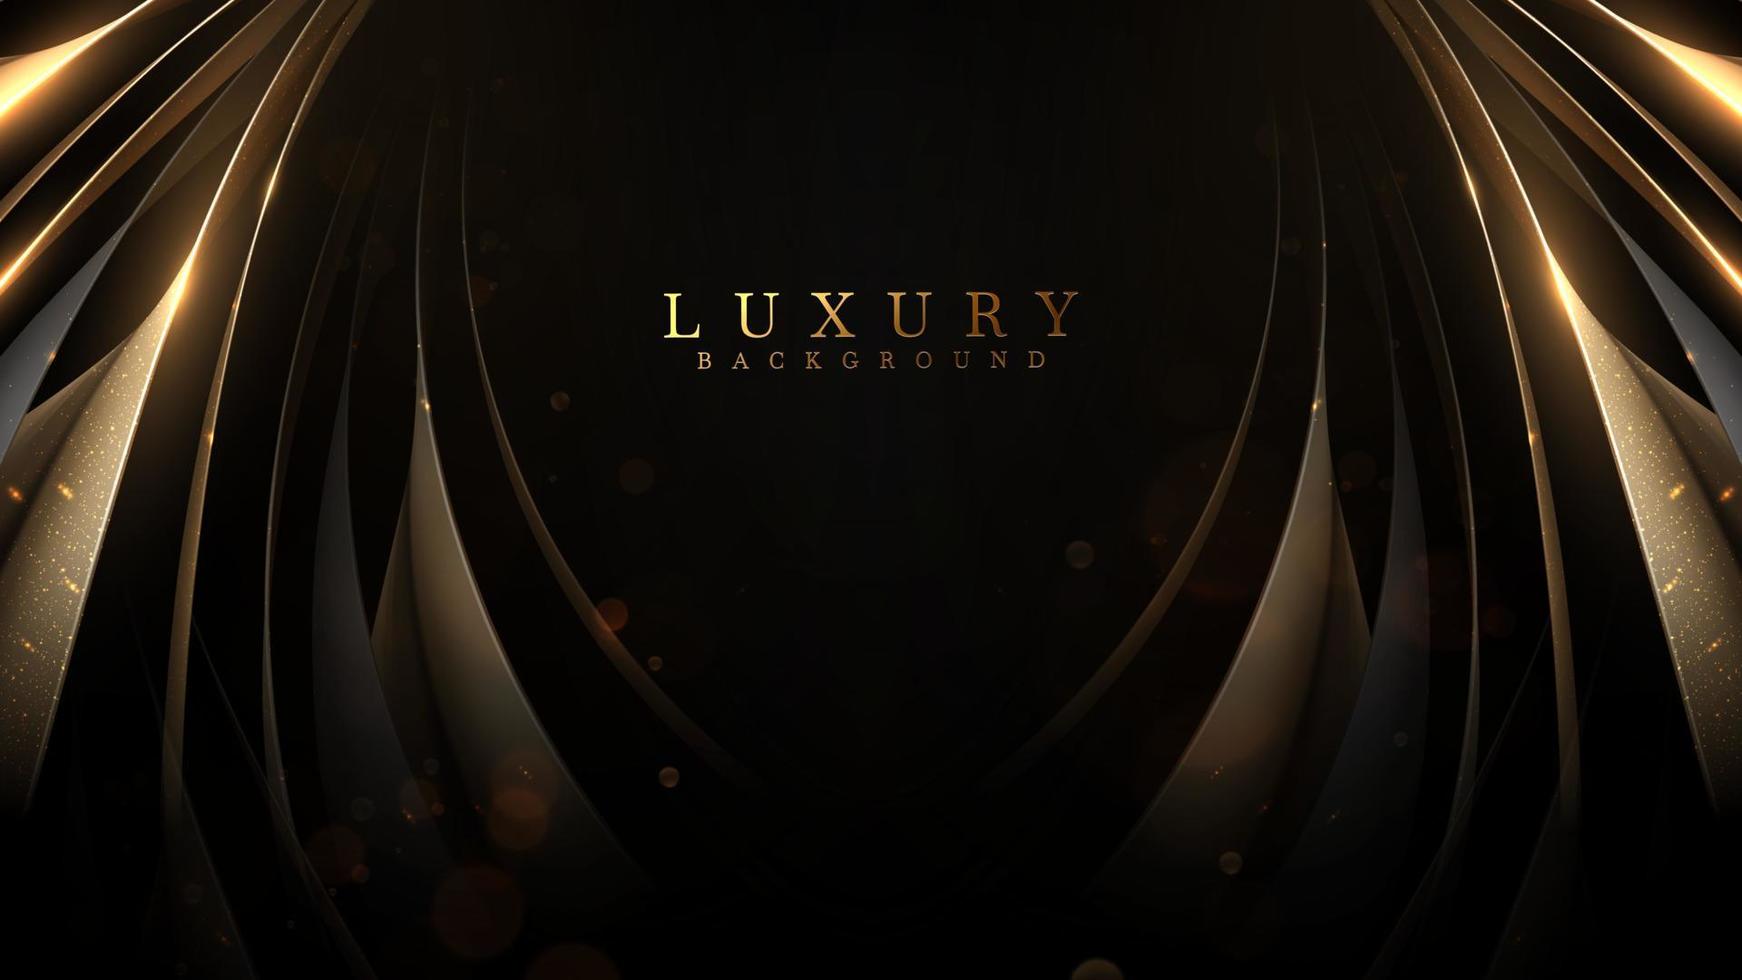 zwart achtergrond met goud lint elementen en schitteren licht effect decoraties en bokeh. luxe stijl ontwerp concept. vector illustratie.